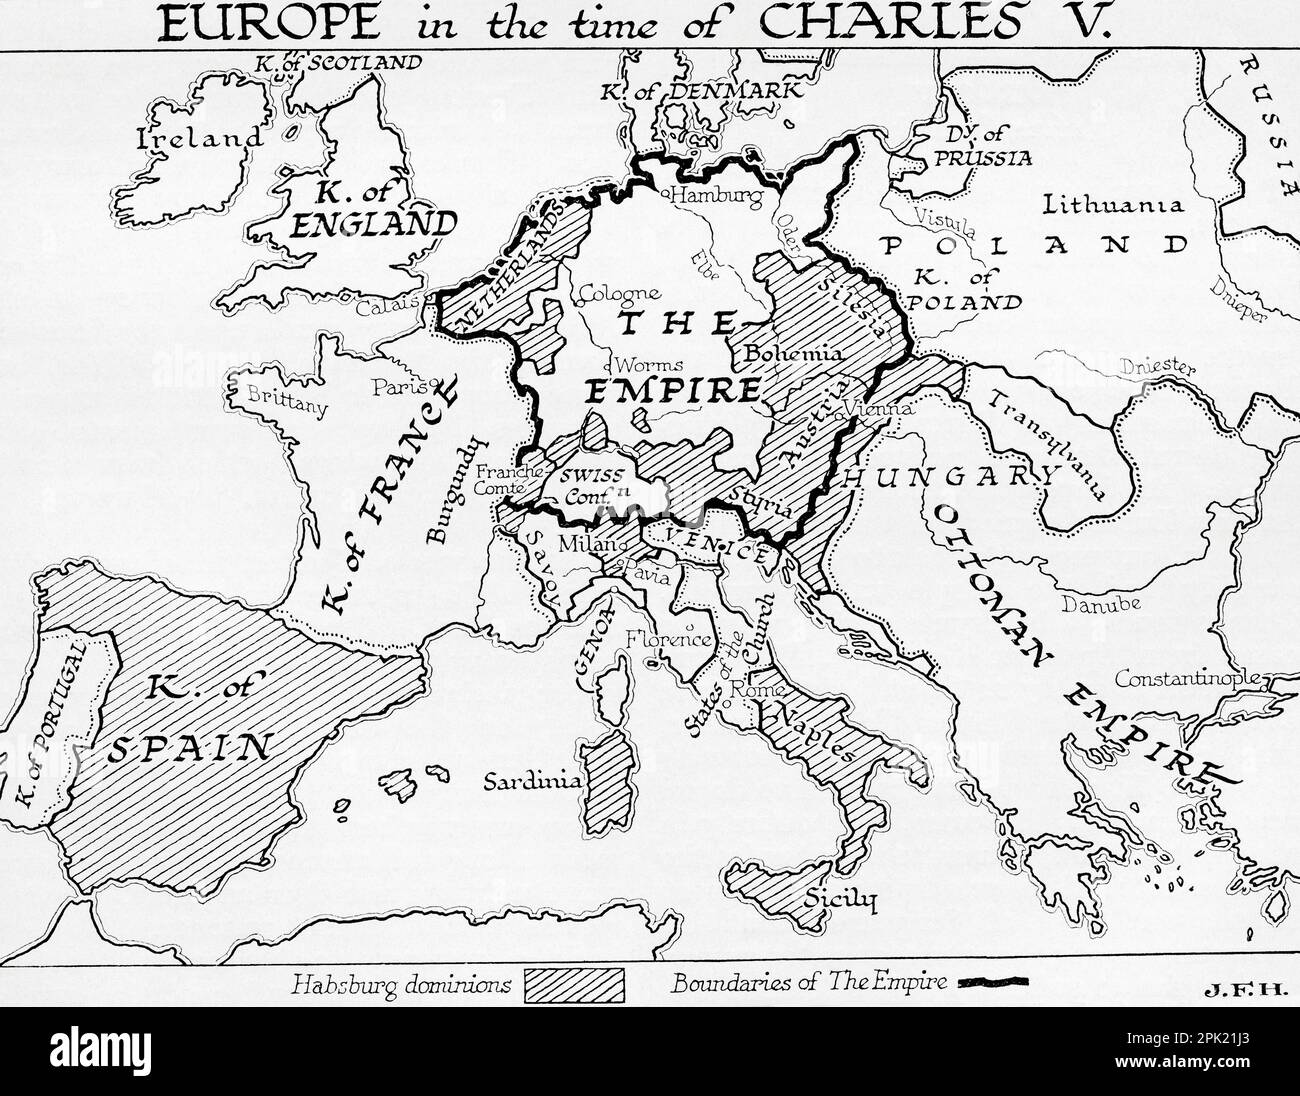 Carte de l'Europe à l'époque de Charles V, empereur romain Saint, 16th siècle. Extrait du livre Outline of History de H.G. Puits, publié en 1920. Banque D'Images